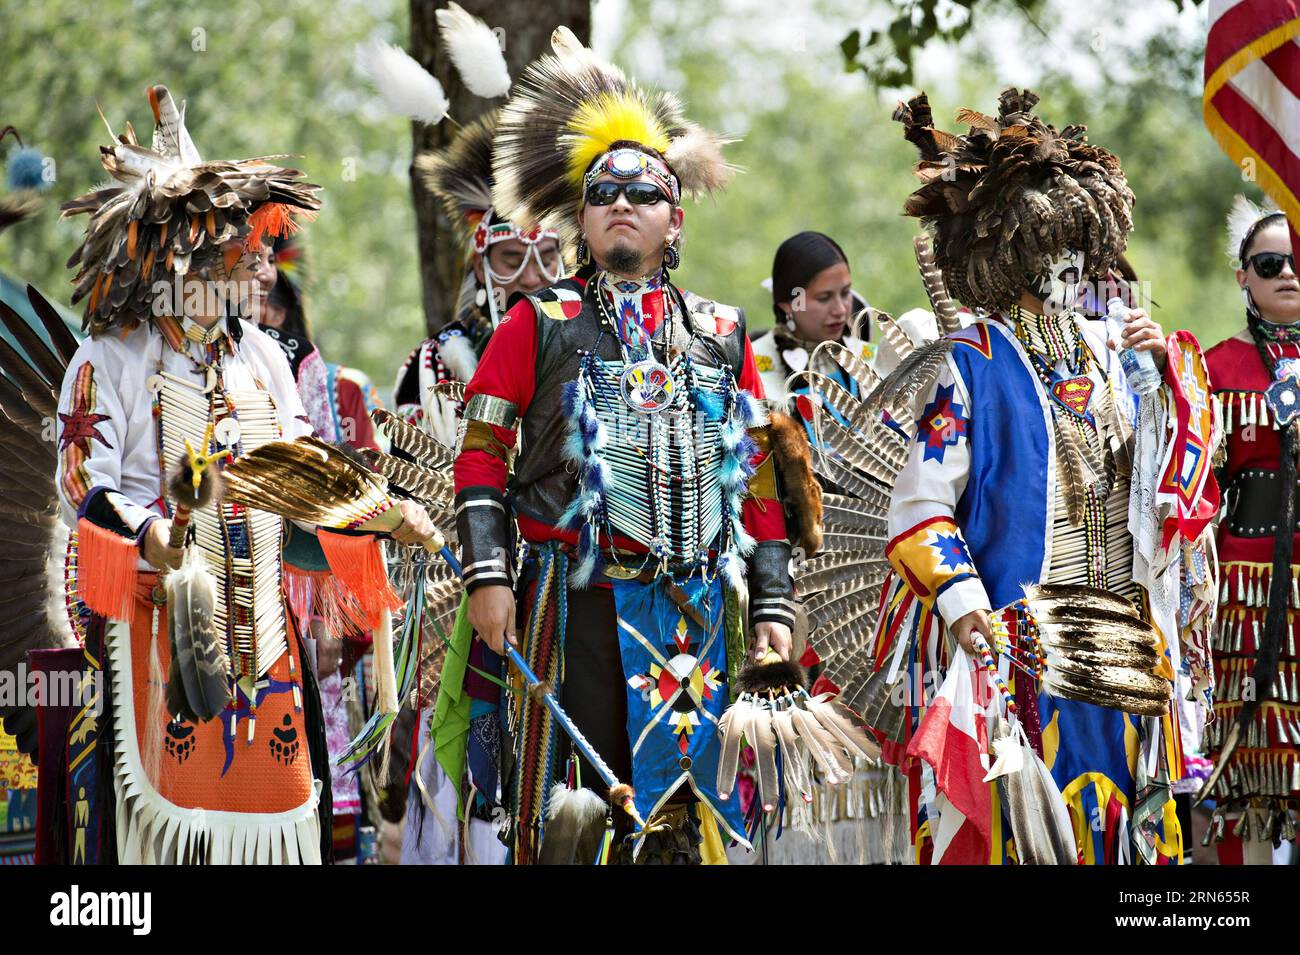 Le persone che indossano costumi tradizionali sono raffigurate mentre partecipano all'Echos of a Nation Powwow alla riserva Kahnawake vicino a Montreal, Canada, l'11 luglio 2015. Il Powwow è ospitato ogni anno dalla tribù locale Mohawk. ) CANADA-MONTREAL-CULTURA-INDIGENA-RADUNO AndrewxSoong PUBLICATIONxNOTxINxCHN celebrità che indossano costumi tradizionali sono raffigurate mentre partecipano agli ECHI di una Nazione Powwow ALLA Kahnawake Reserve vicino a Montreal Canada L'11 luglio 2015 il Powwow È ospitato annualmente dalla tribù locale Mohawk Canada Montreal Culture Indigenous Celebrities Gathering e Foto Stock